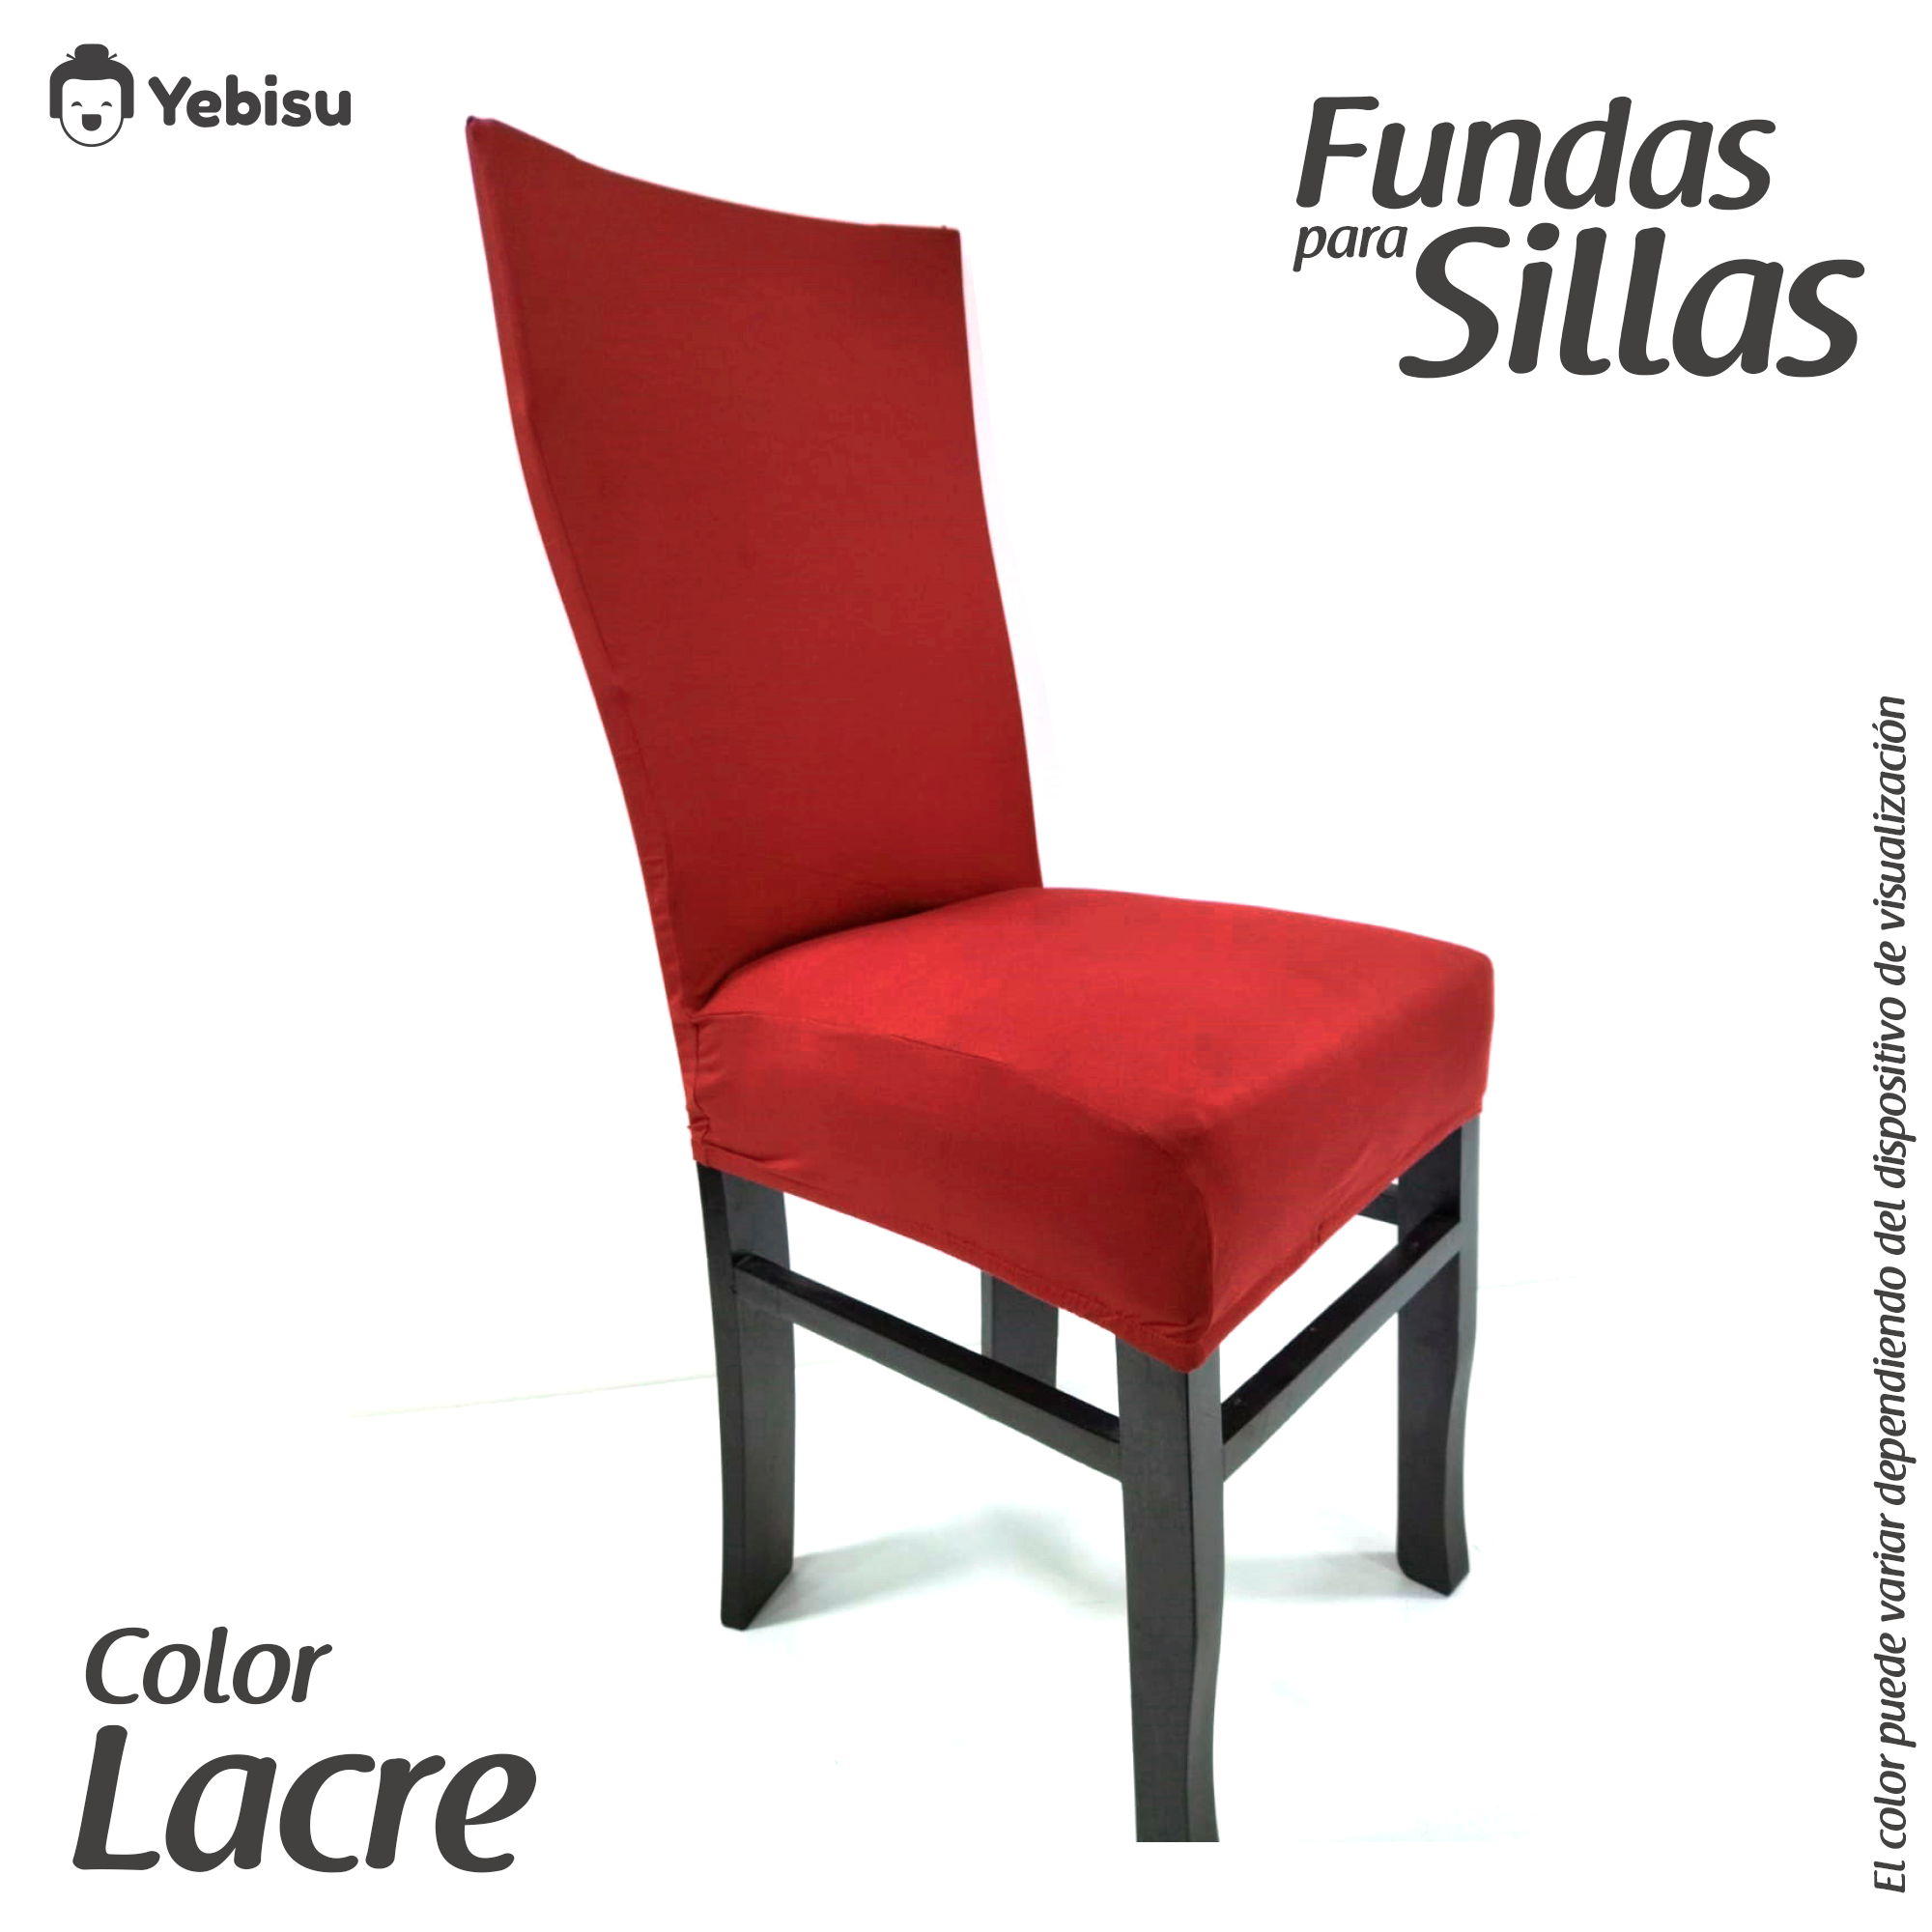 Fundas para sillas  Delivery Gratis Lima – YebisuStore